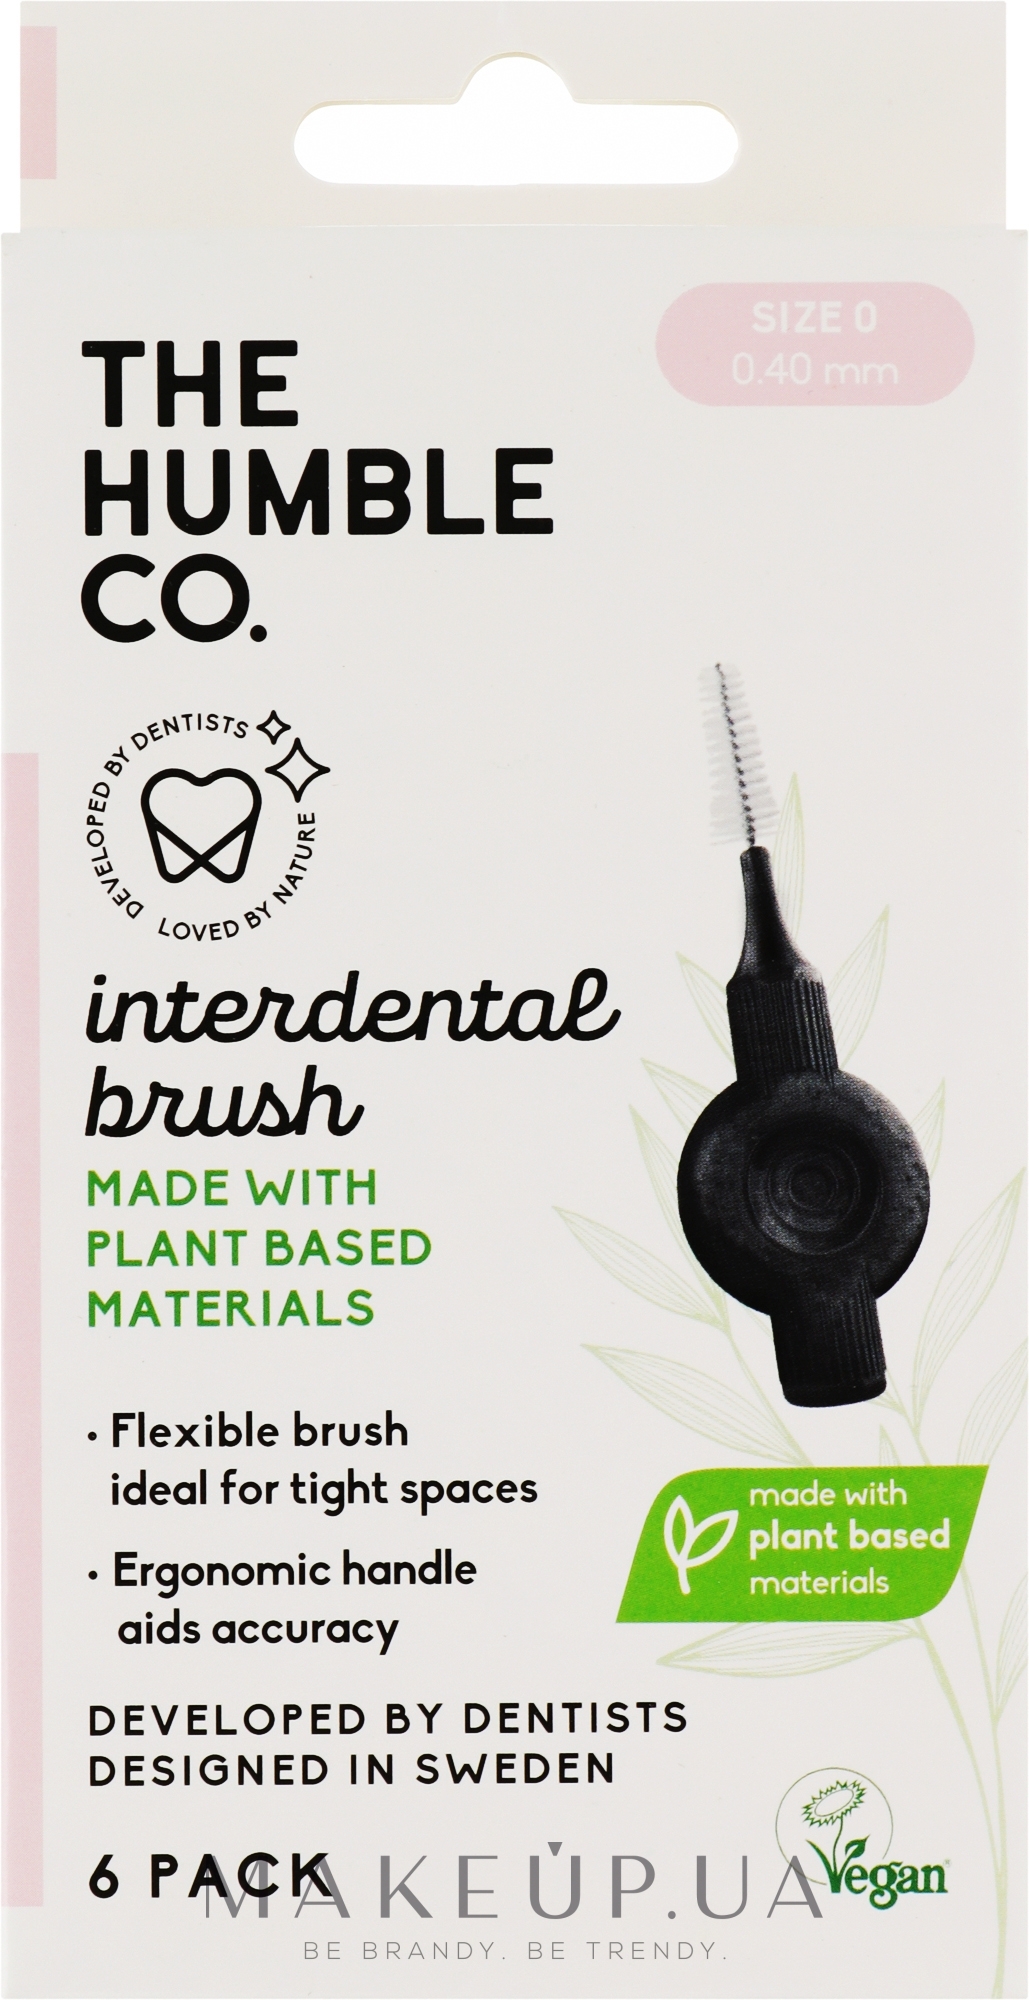 Межзубные интердентальные ершики, 0.40 мм, розовые, 6 шт - The Humble Co Interdental Brush — фото 6шт